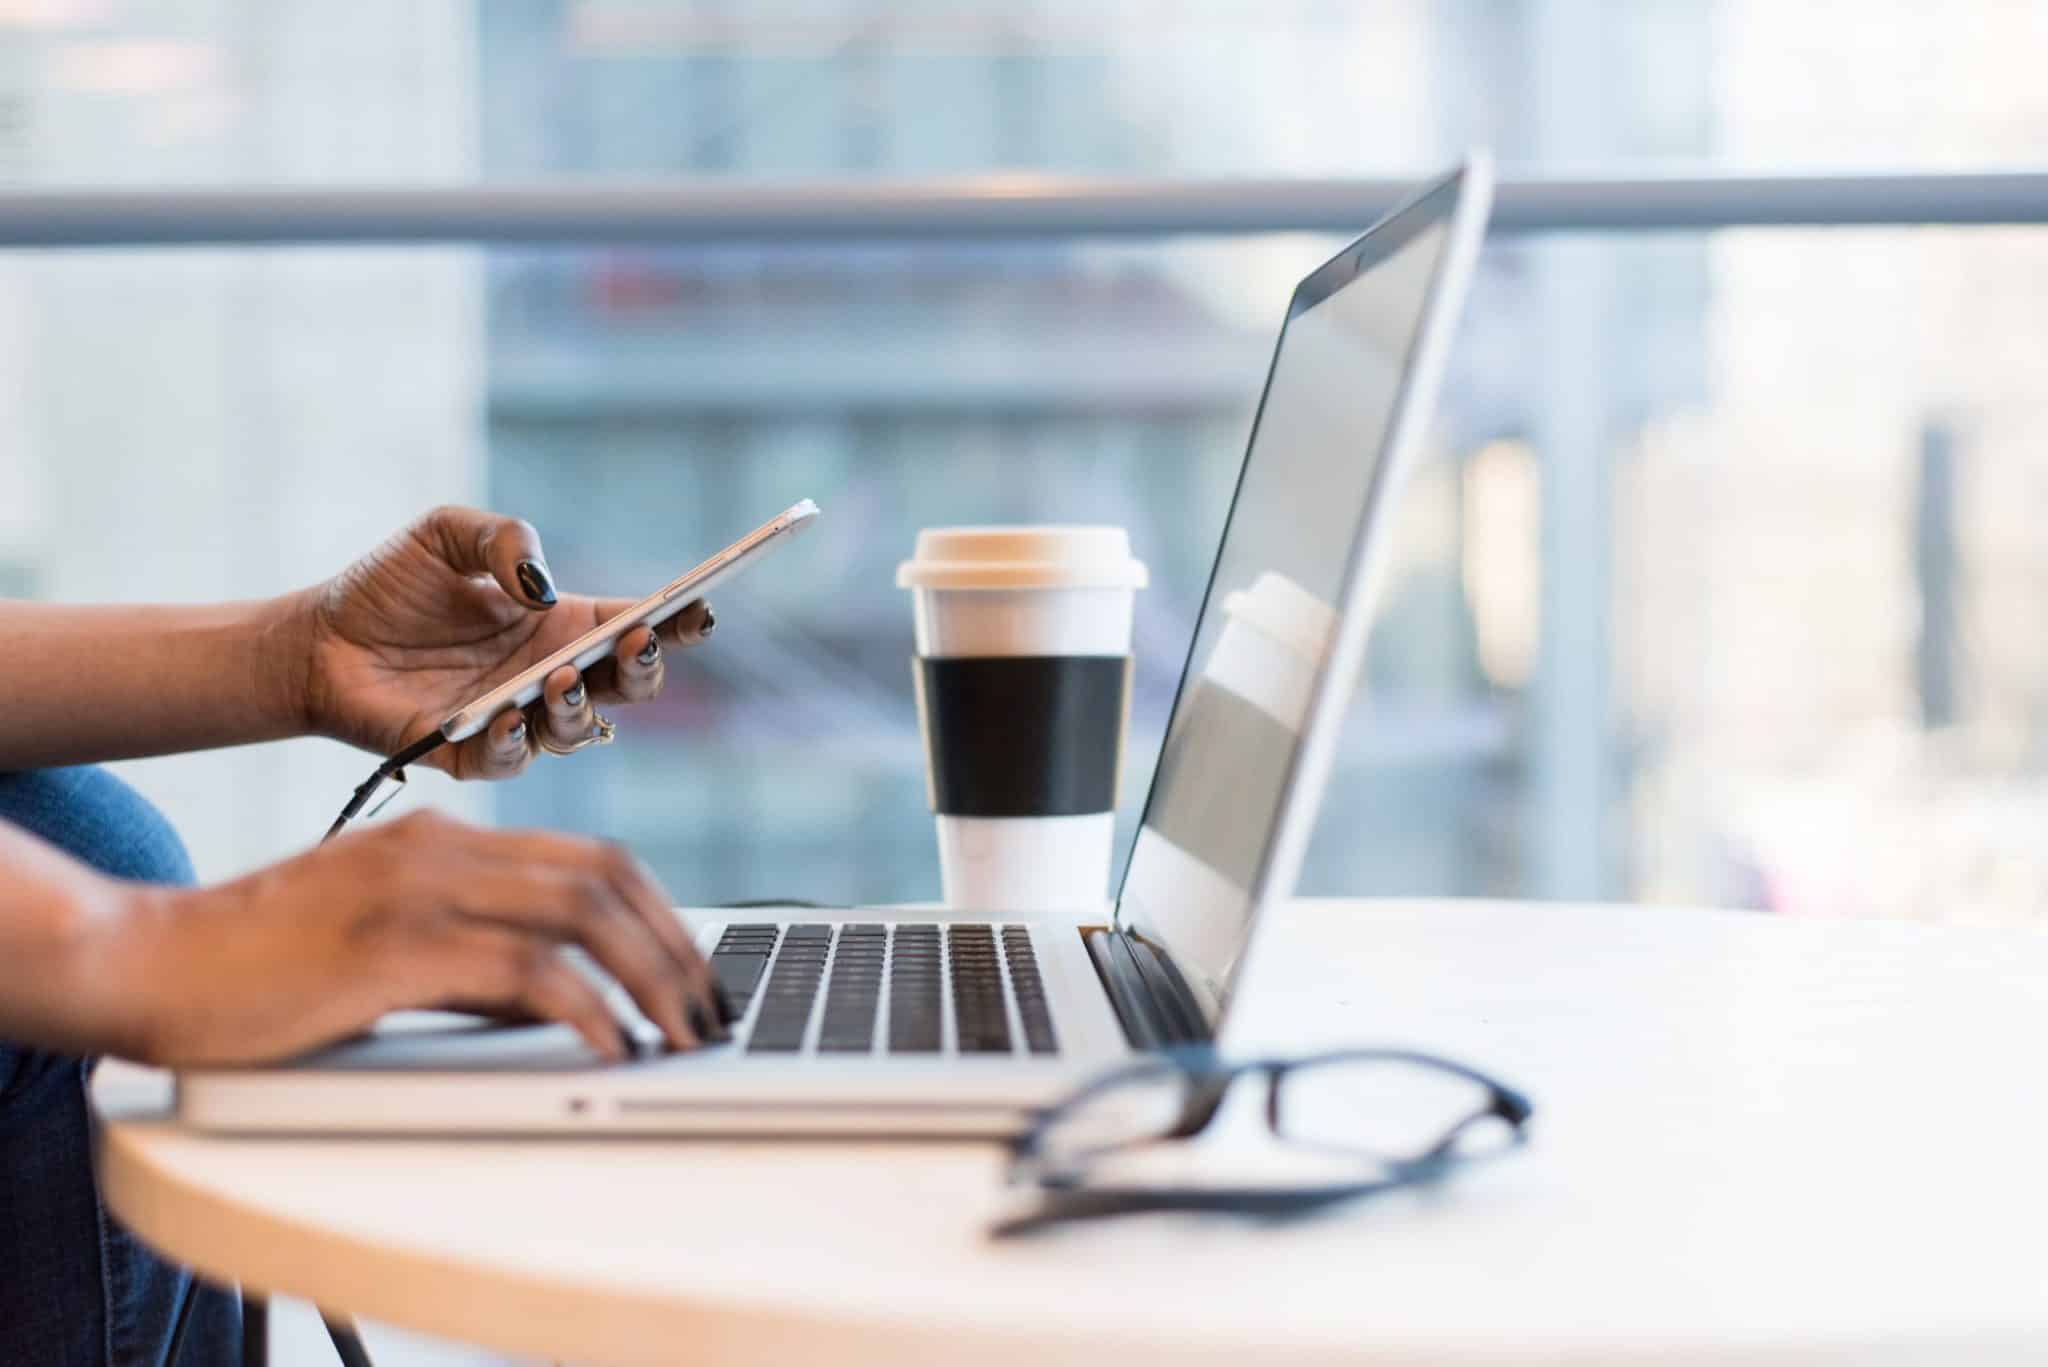 femme tapant sur le clavier de son ordinateur portable avec son téléphone dans sa main gauche, lunettes de vue et tasse de café posés sur la table